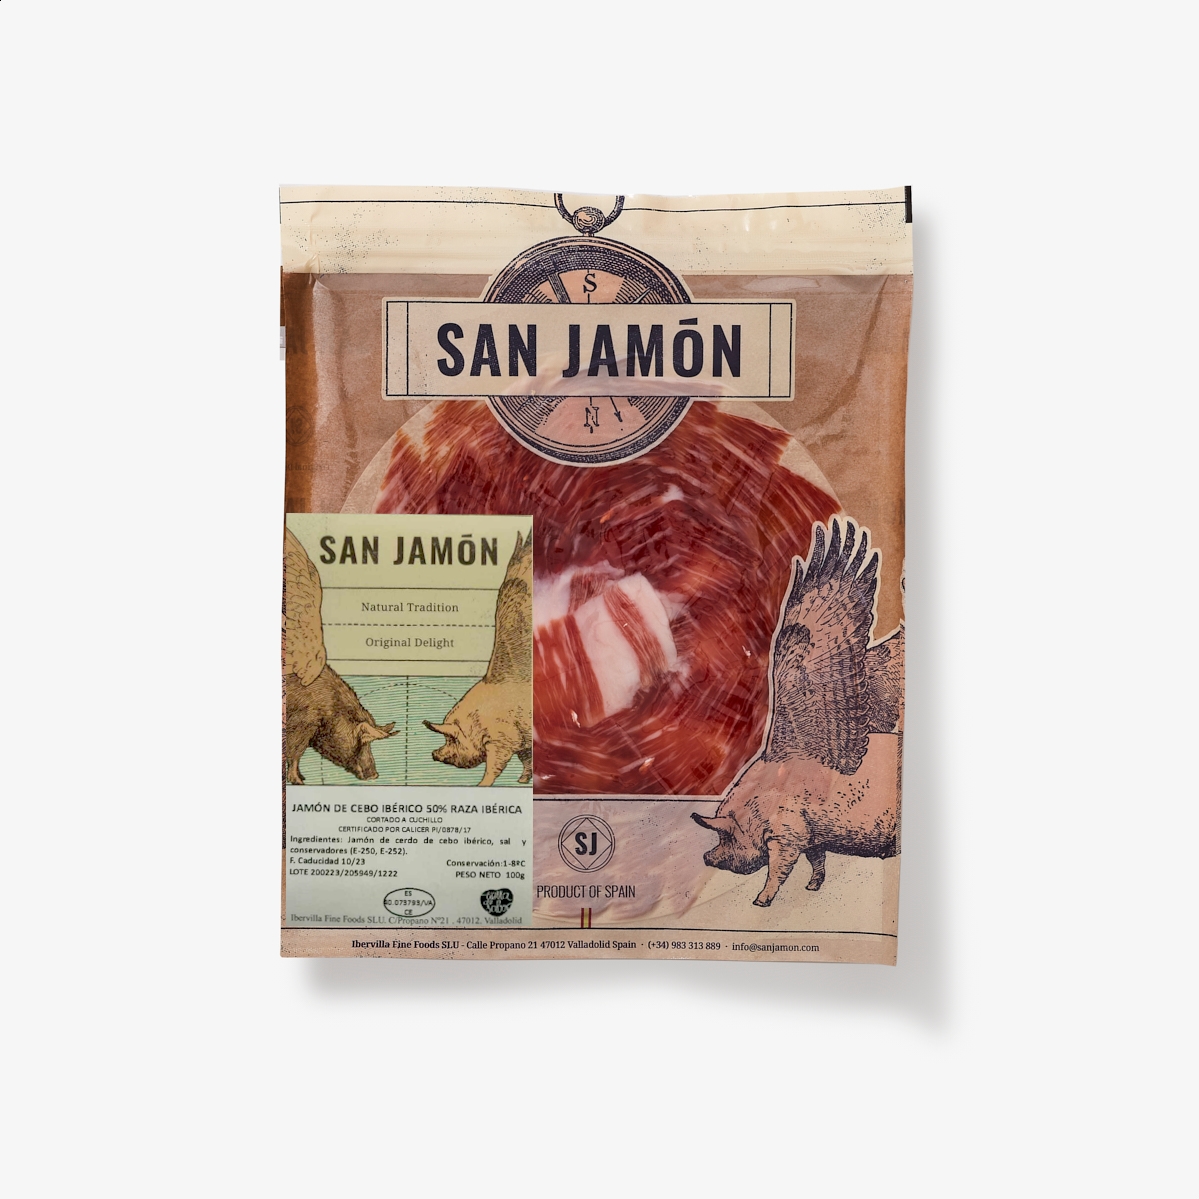 San Jamón - Jamón de cebo ibérico 50% raza ibérica cortado a cuchillo 100g, 5uds